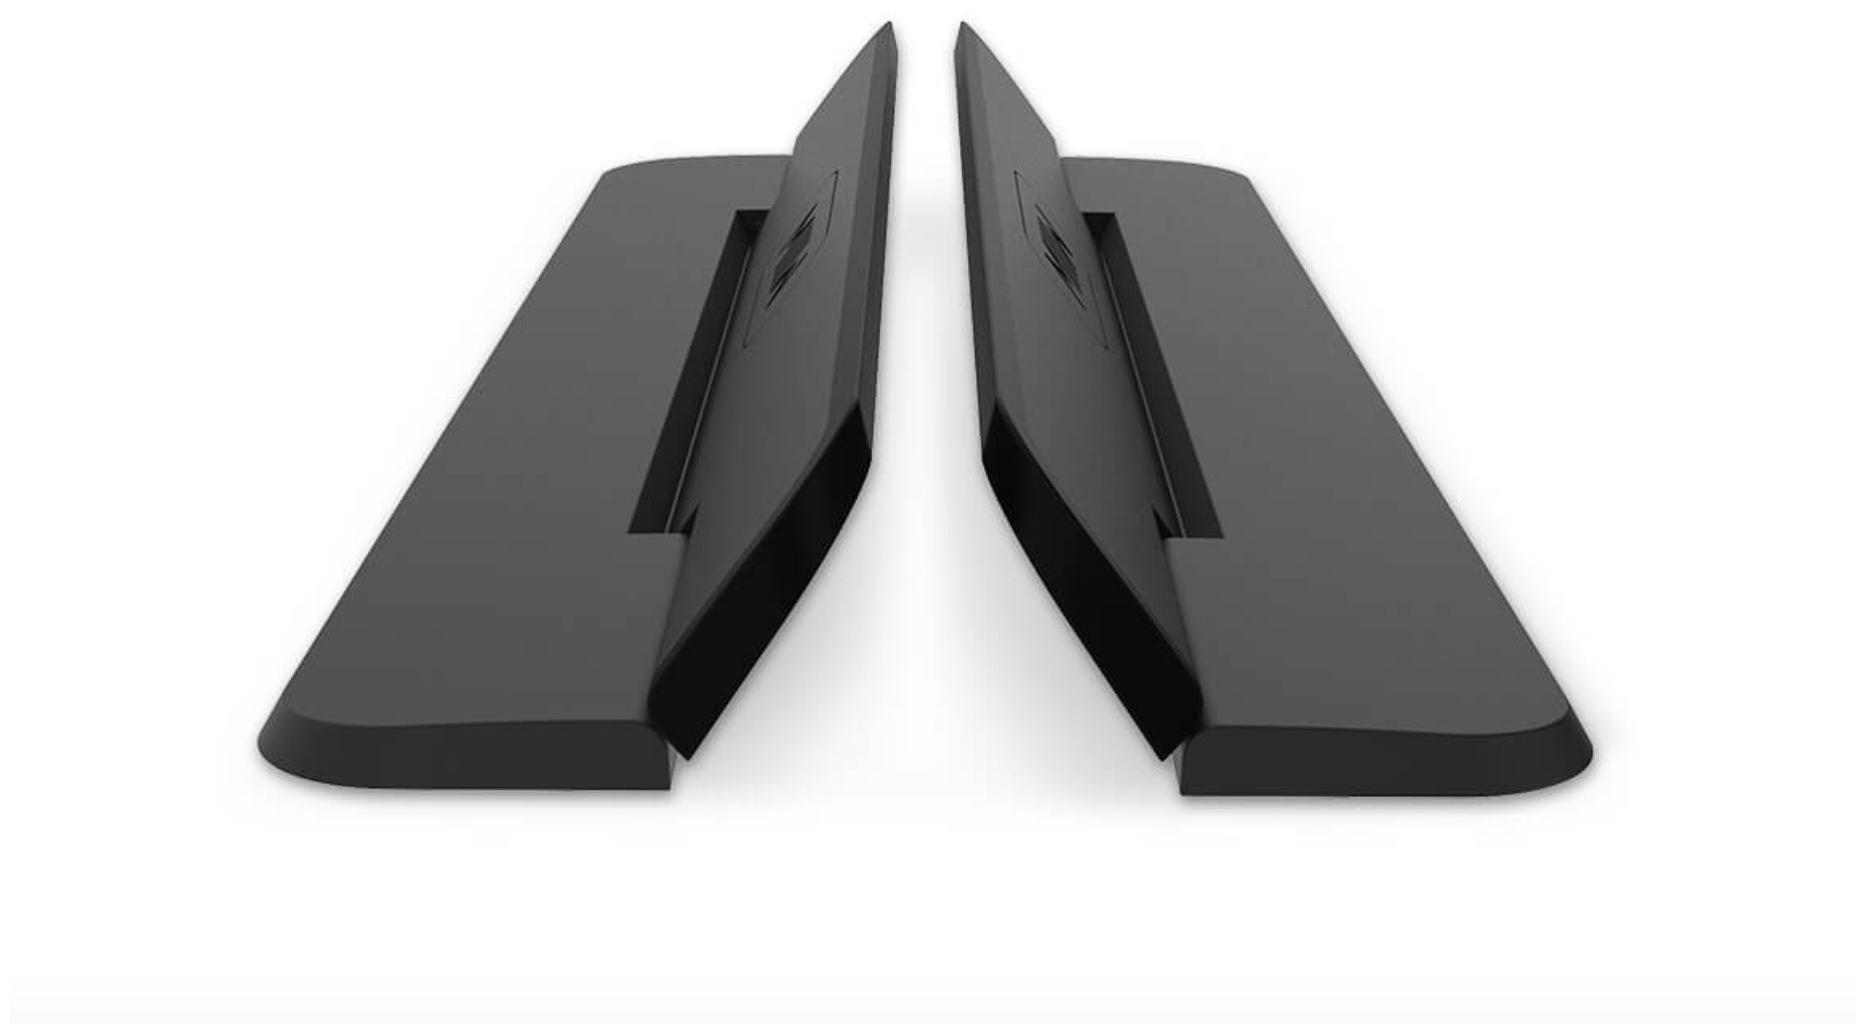 Складная наклеивающаяся мини подставка для ноутбука MyPads A12-741 для моделей ноутбуков Irbis Acer Lenovo Prestigio Xiaomi Digma MSI Macbook Pr.